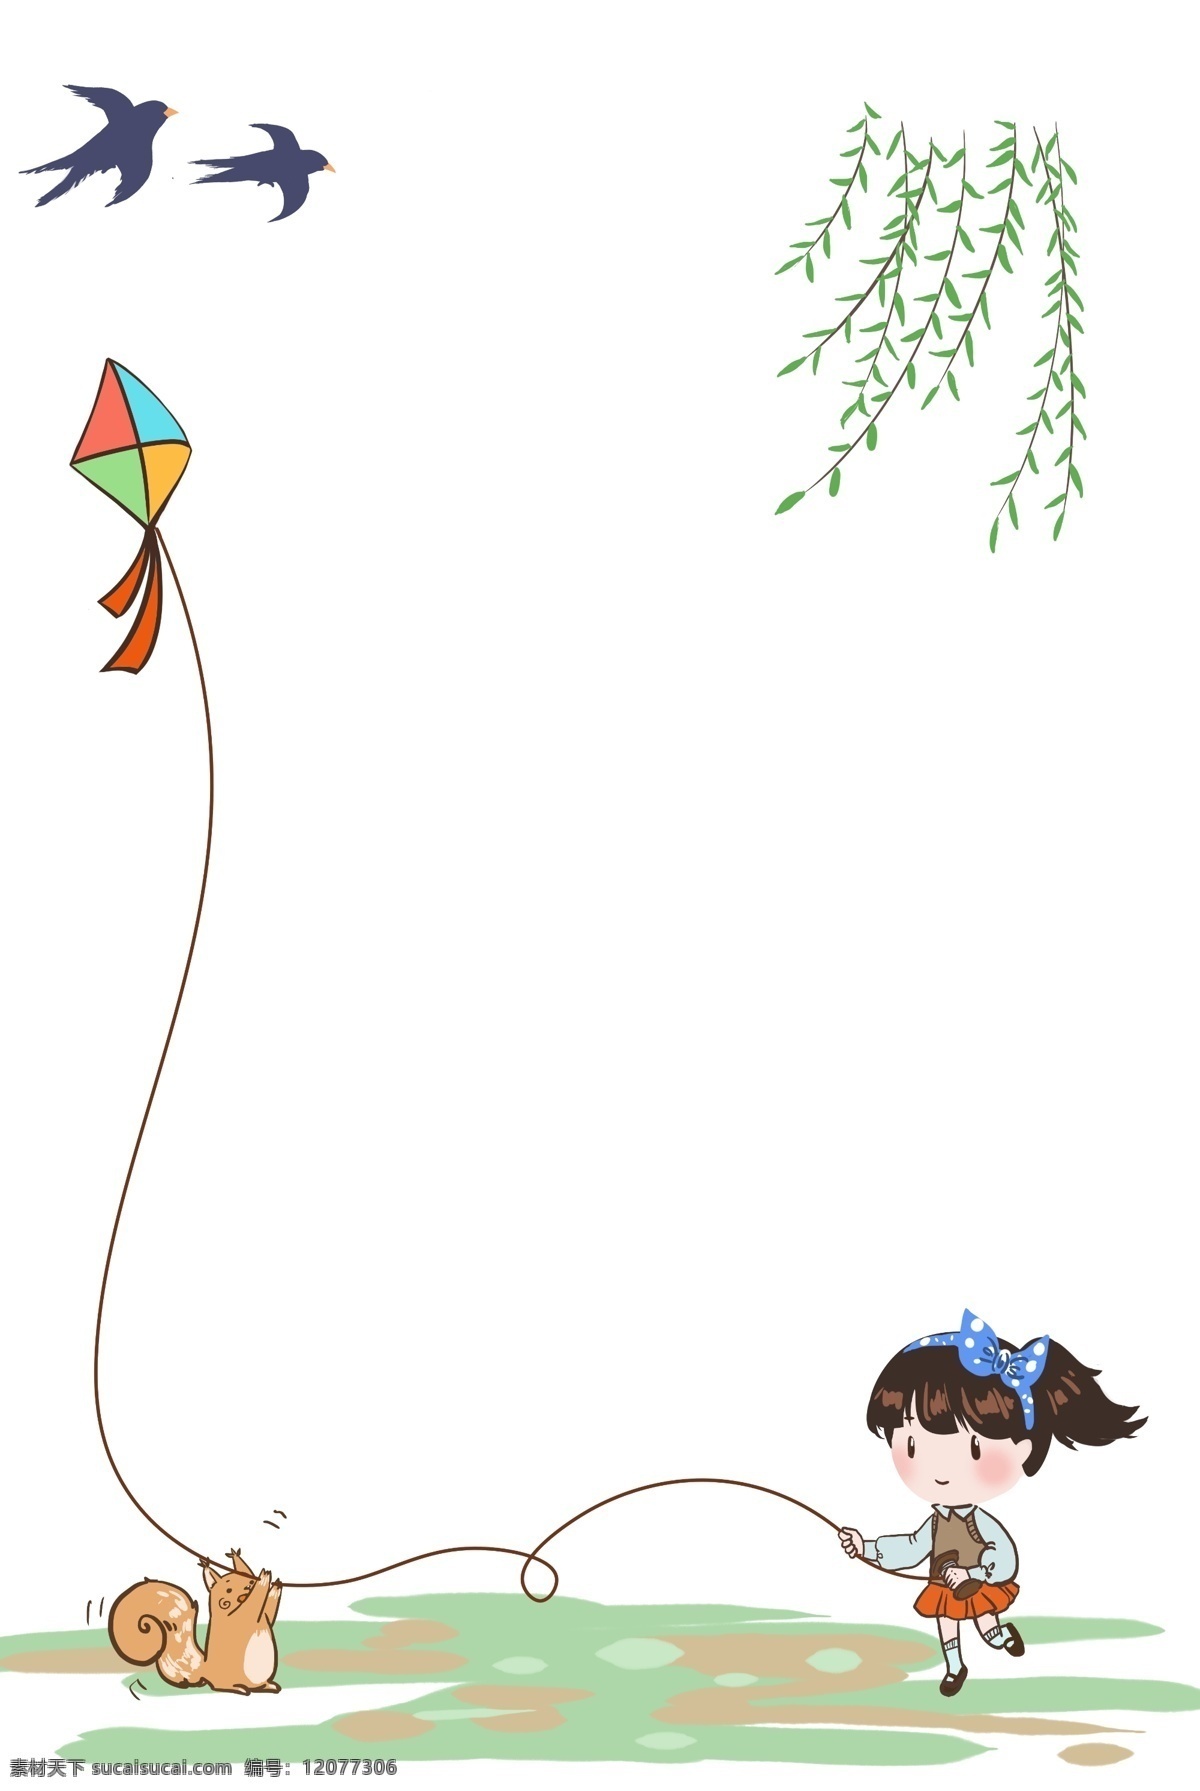 中国 风 孩童 早春 放风筝 图 燕子 柳枝 松鼠 孩子 儿童 少女 边框 插图 广告招贴 手绘 海报